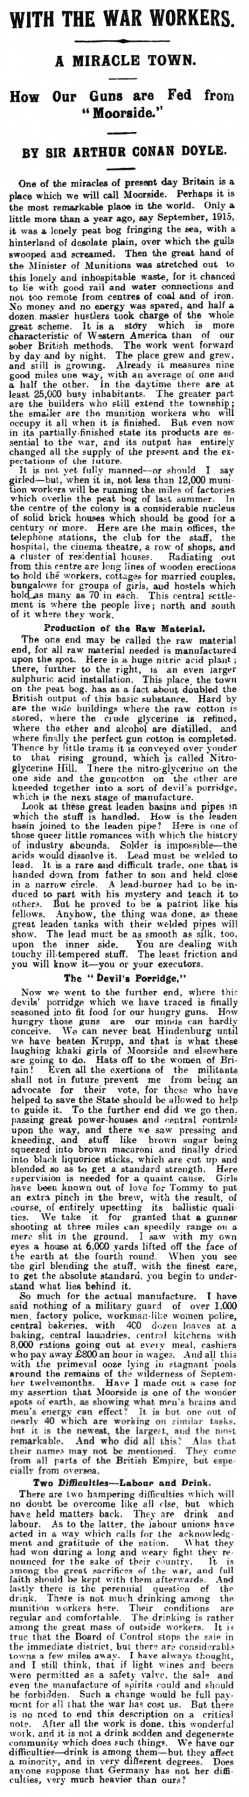 The Belfast News-Letter (28 november 1916, p. 8)